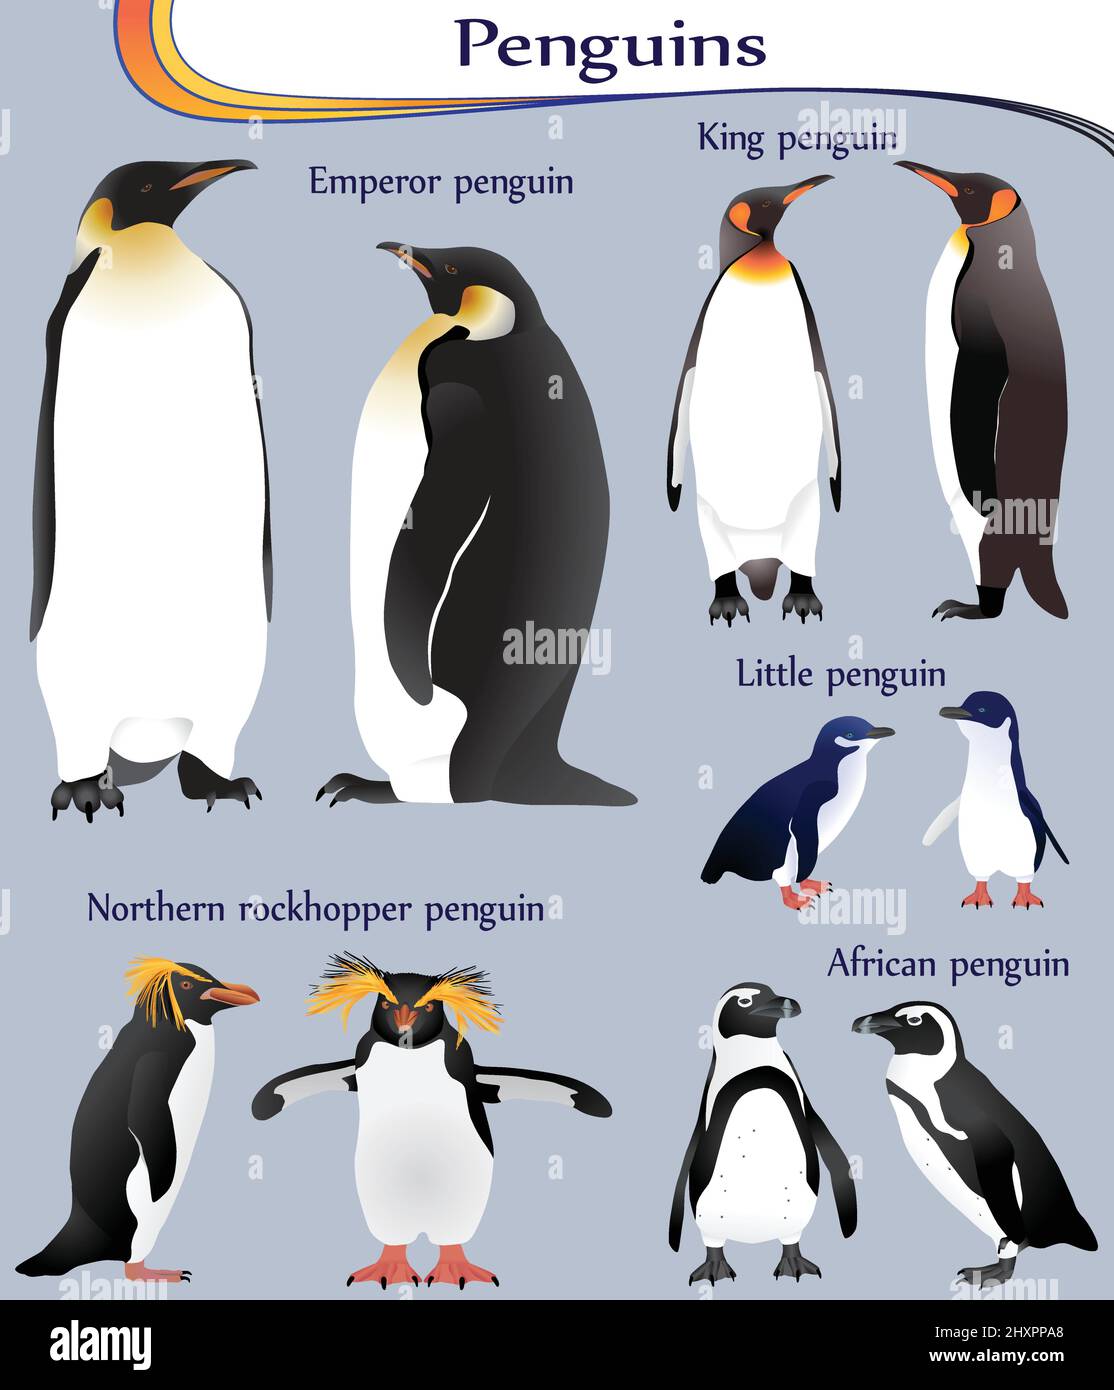 Collection de différentes espèces de pingouins en couleur image: empereur, roi, petit, africain, nord de la rockhopper Illustration de Vecteur